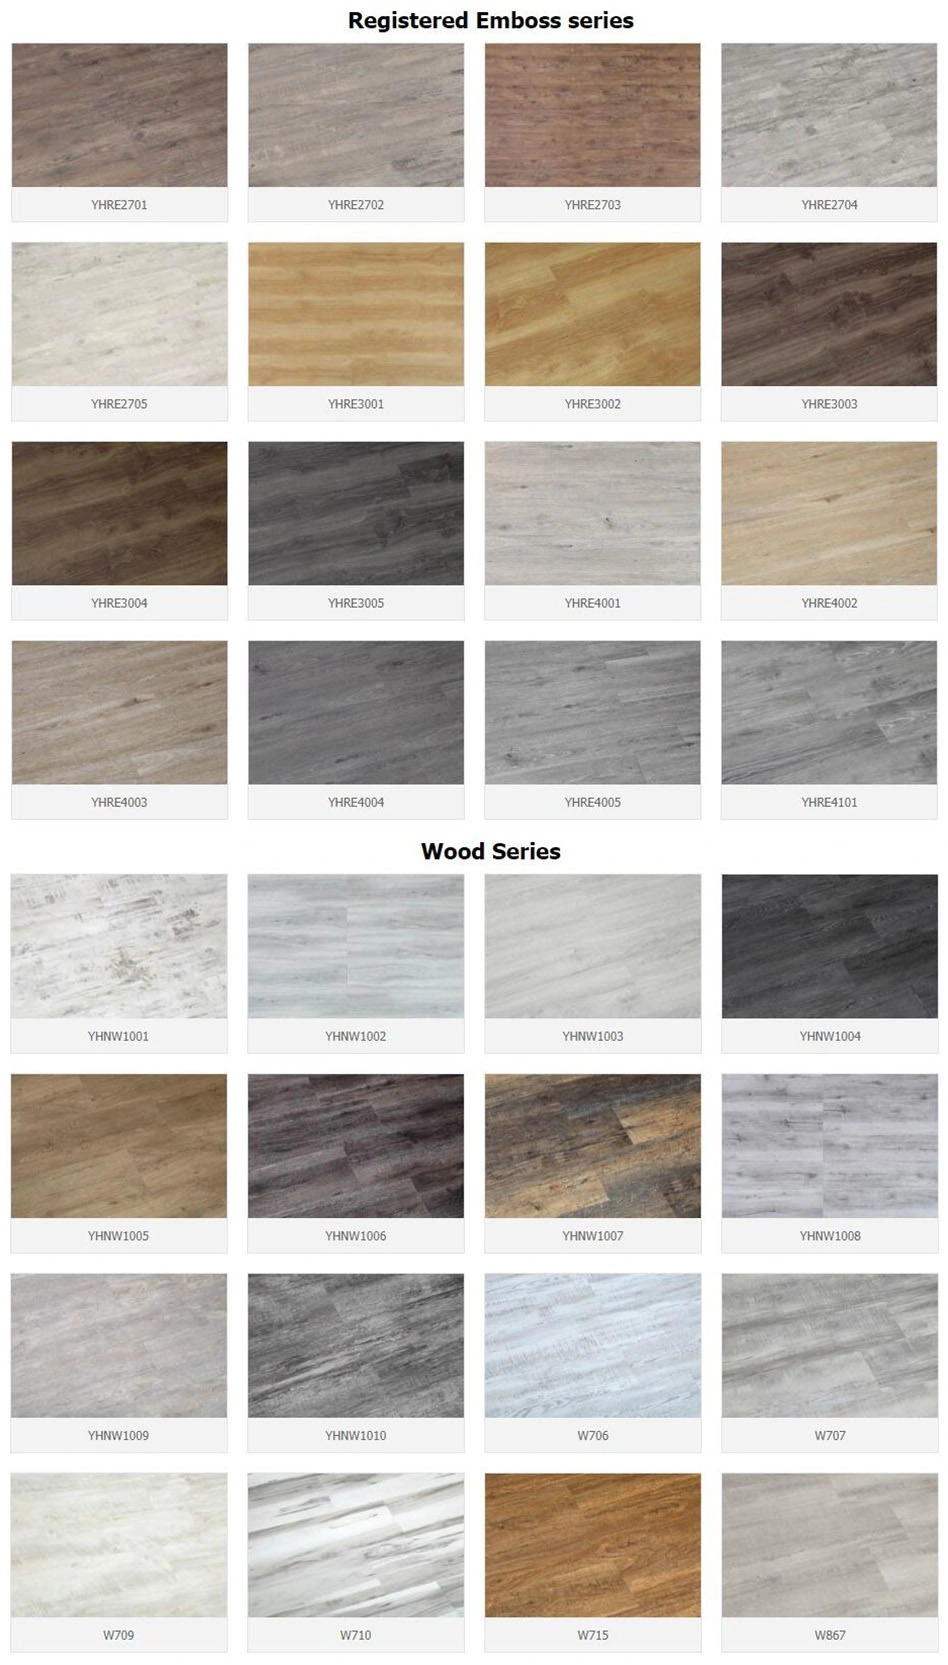 Durable Commercial Fire Resistant Carpet Tiles PVC Vinyl Flooring